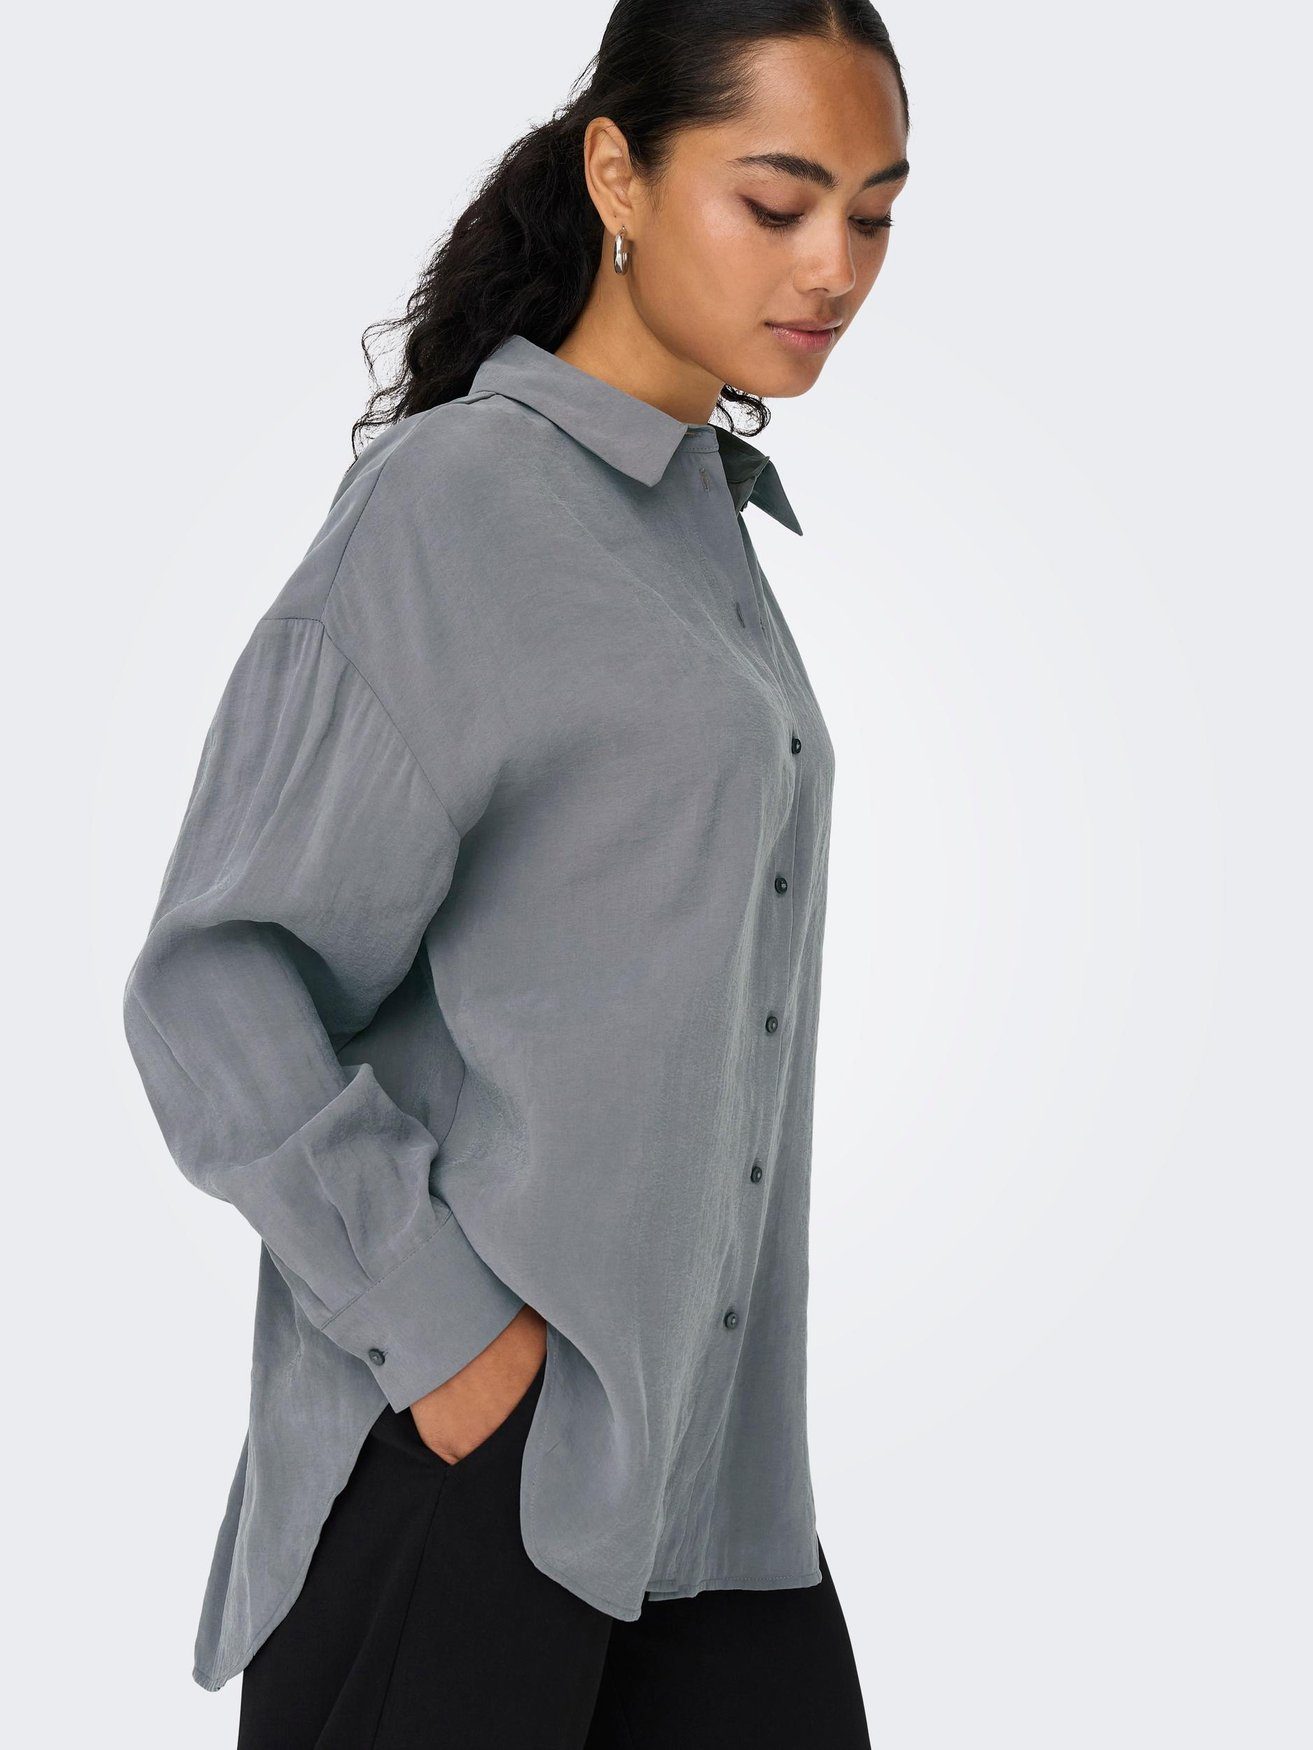 ONLIRIS Hemd Langarm in Oversize 5635 ONLY Weites Bluse Shirt Blusenshirt Grau